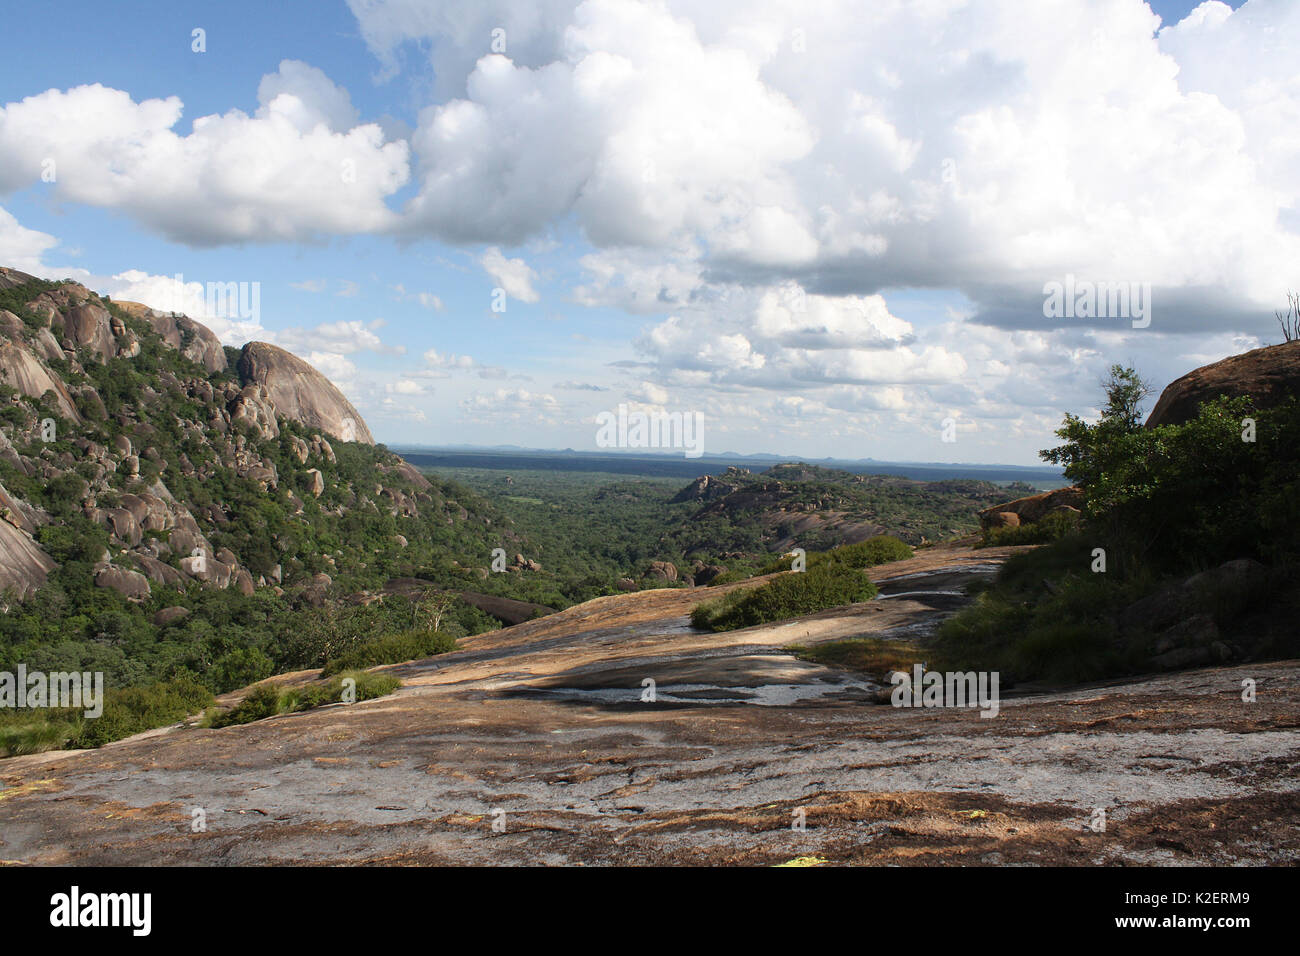 Matobo Hills National Park landscape, Zimbabwe. January 2011. Stock Photo